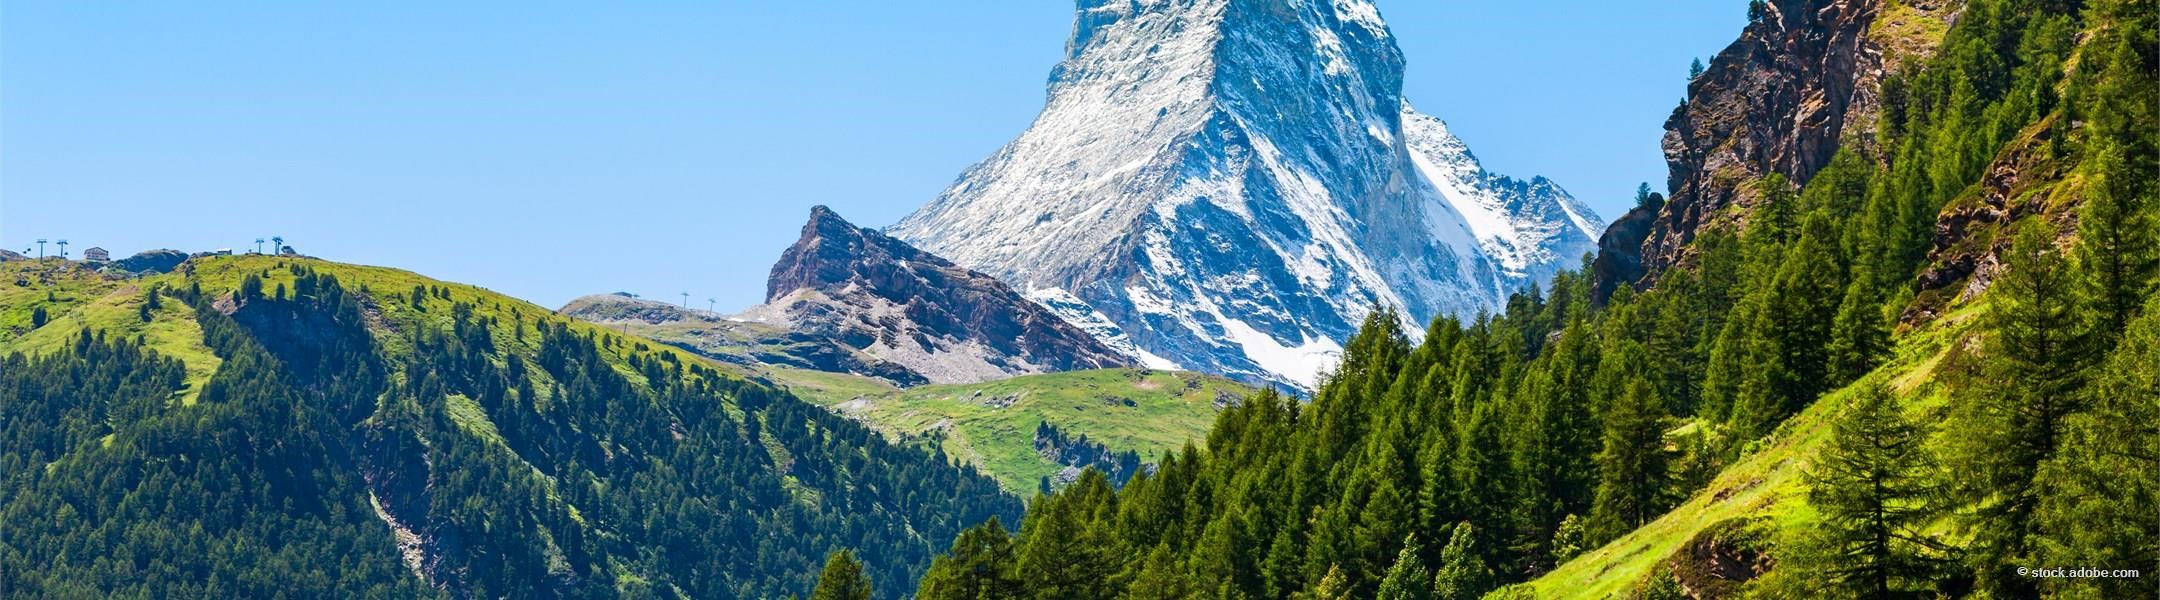 Der meist fotografierte Berg der Welt 